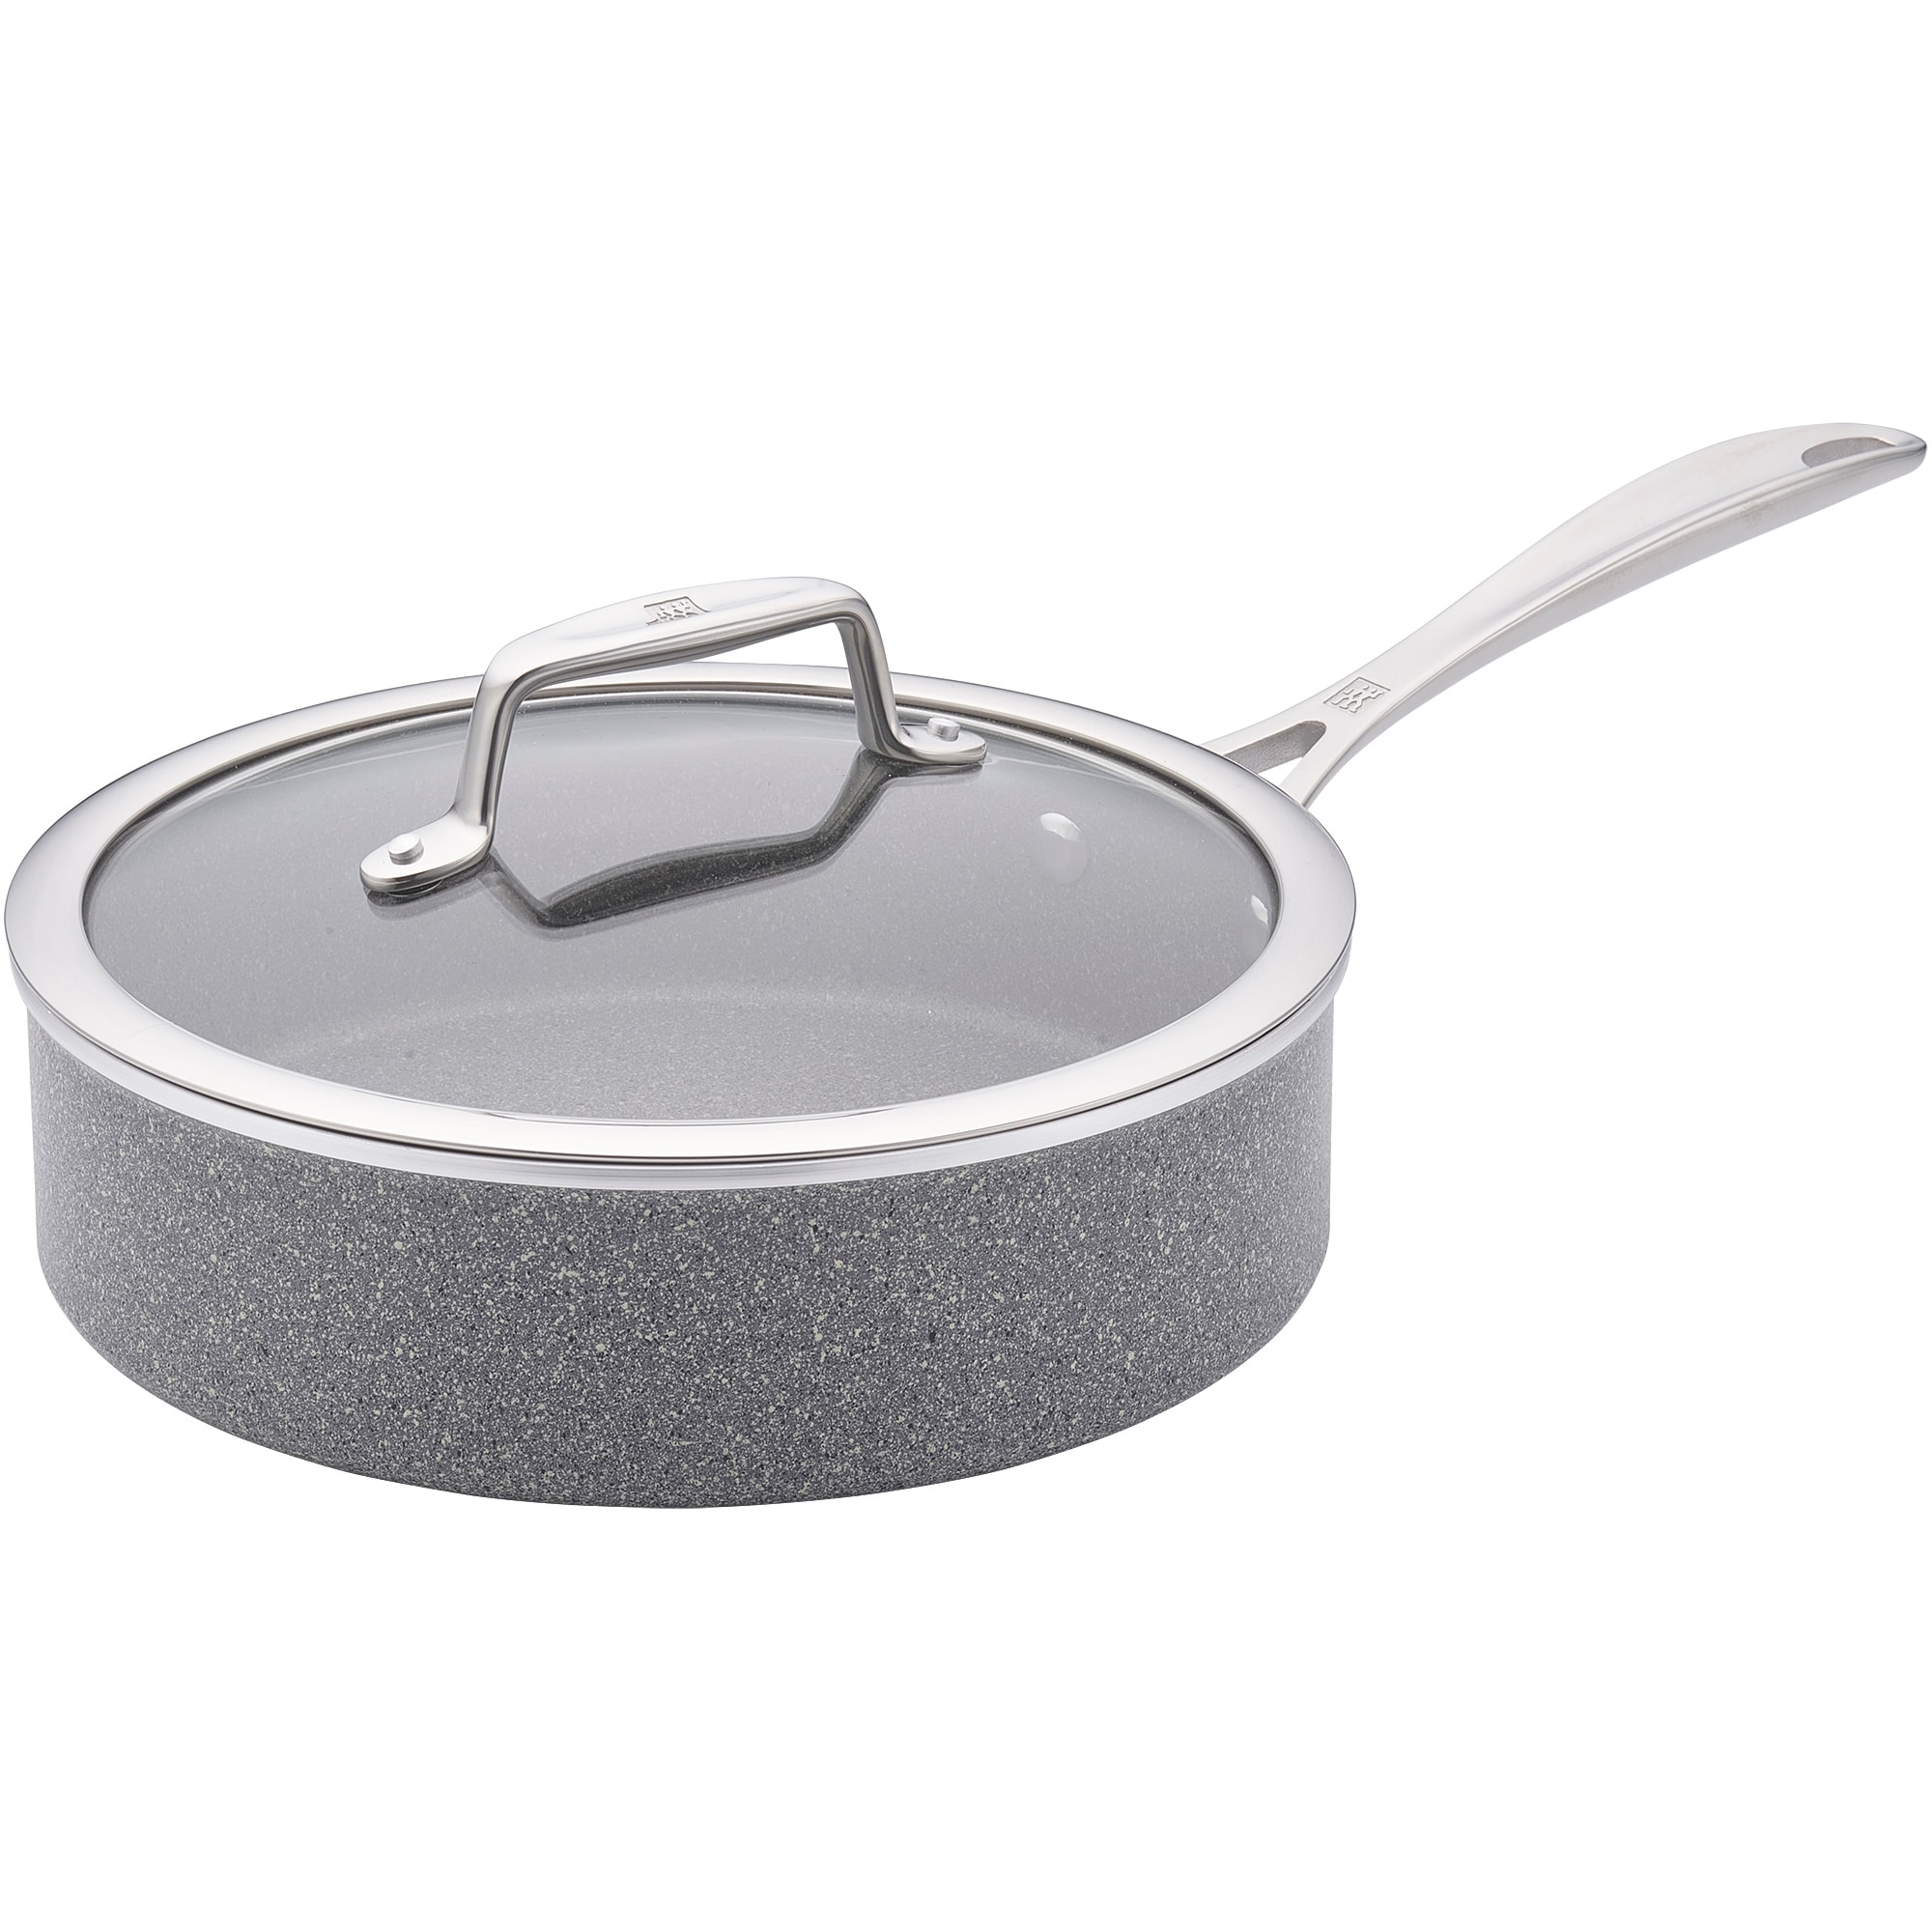 Gray 3-Quart Aluminum Sauce Pan with Lid